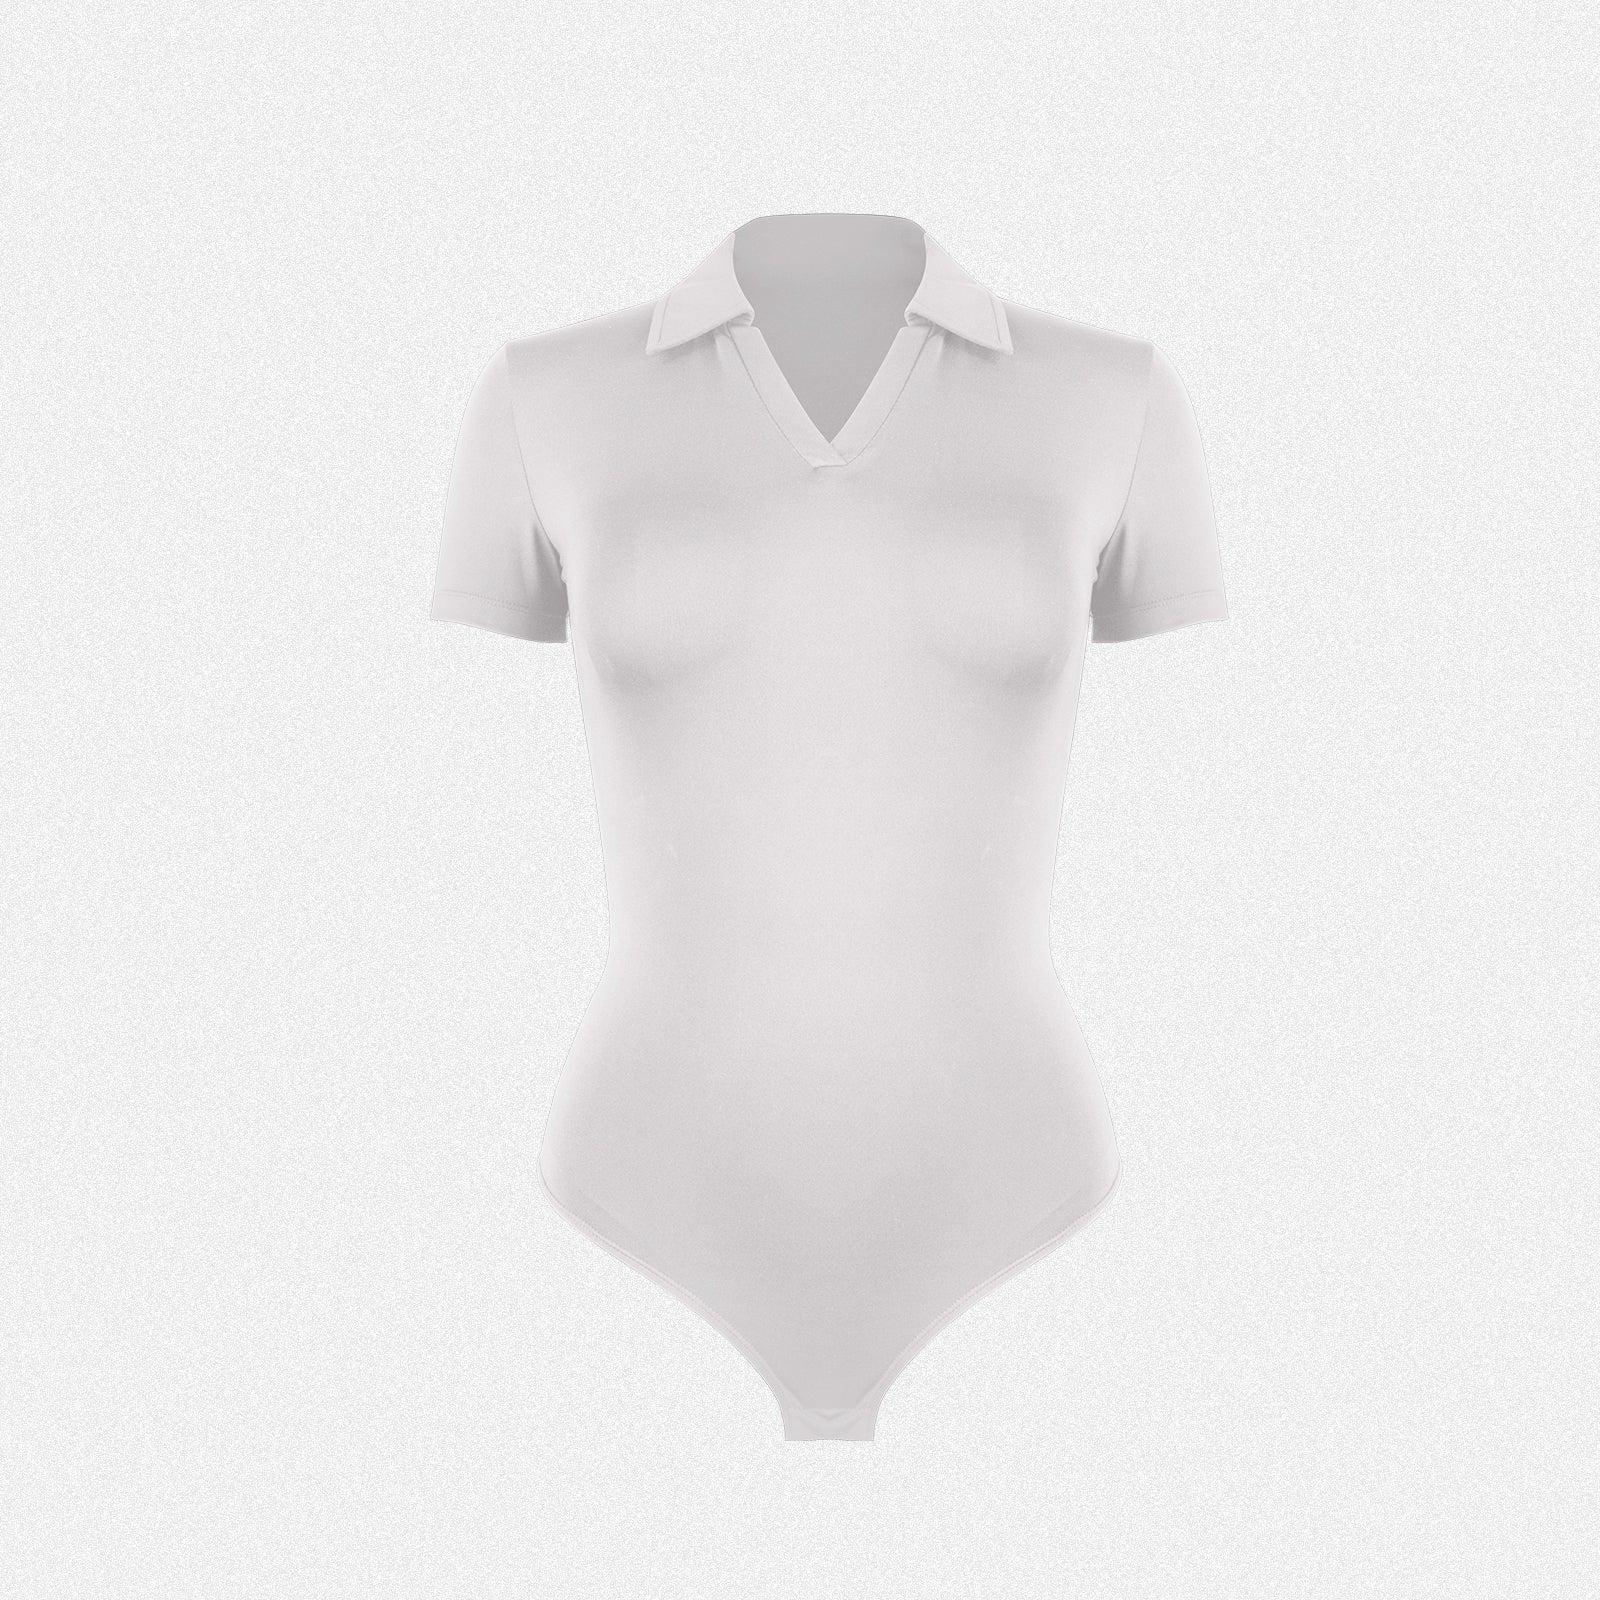 Shaperin V Neck Polo T-shirt Bodysuit Tops